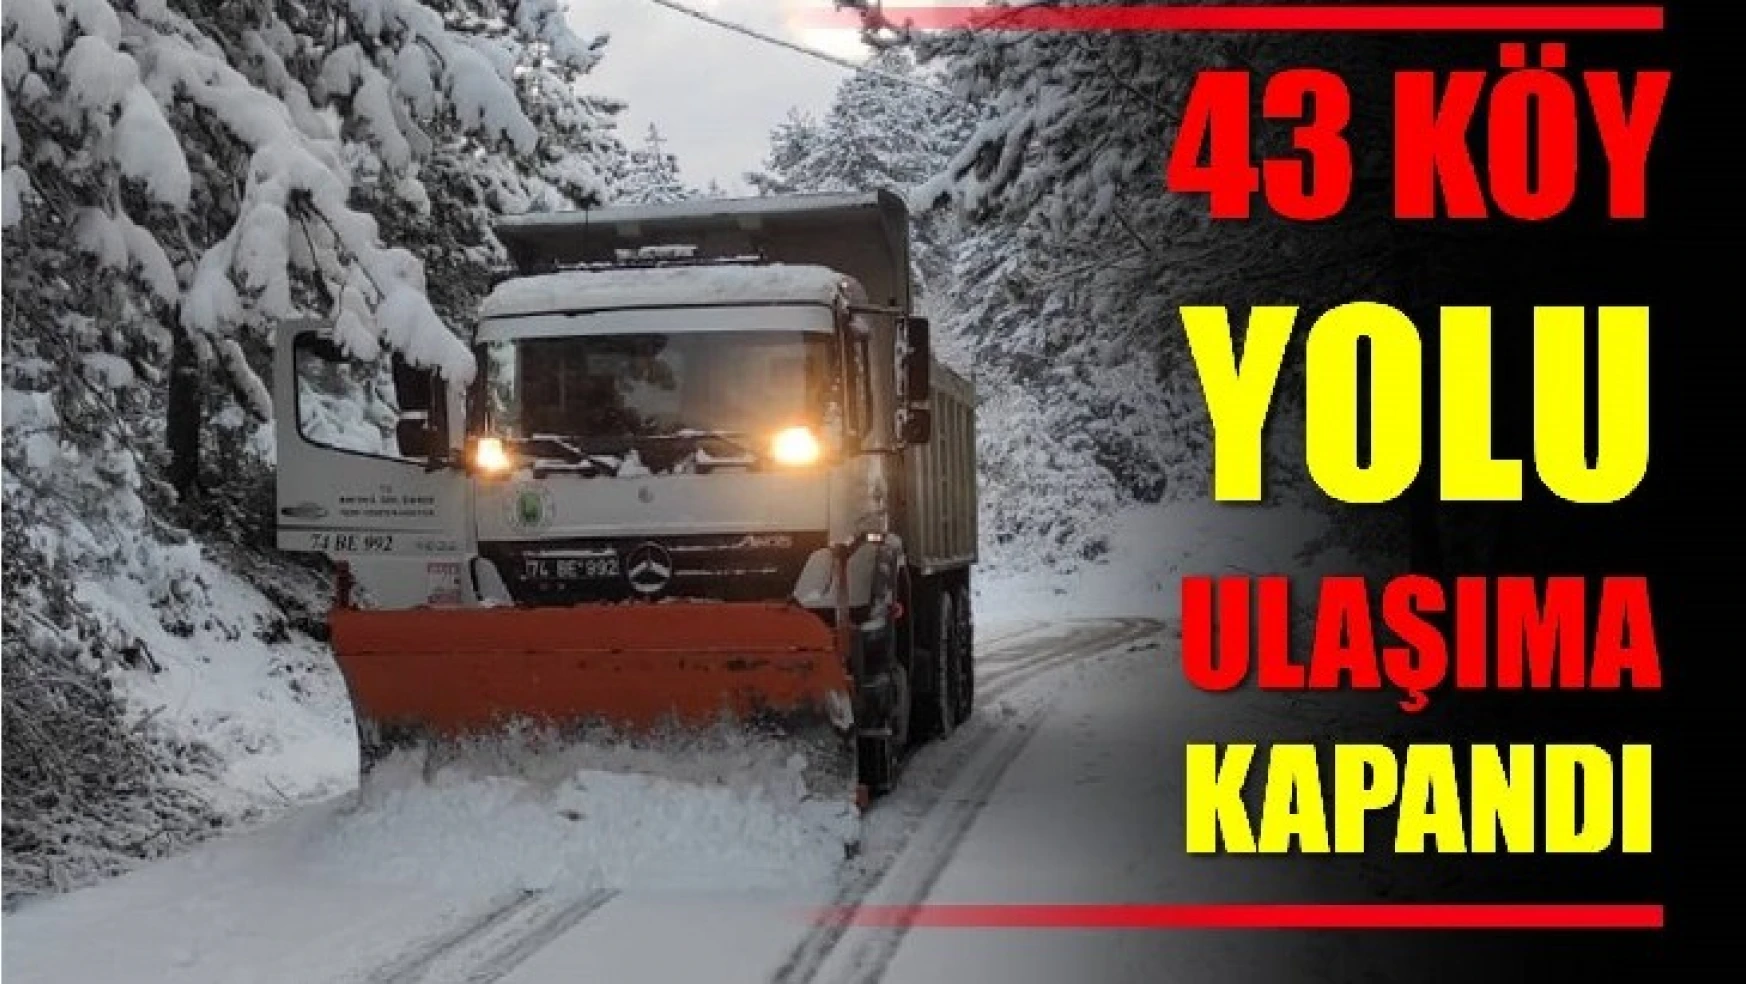 43 köy yolu ulaşıma kapandı